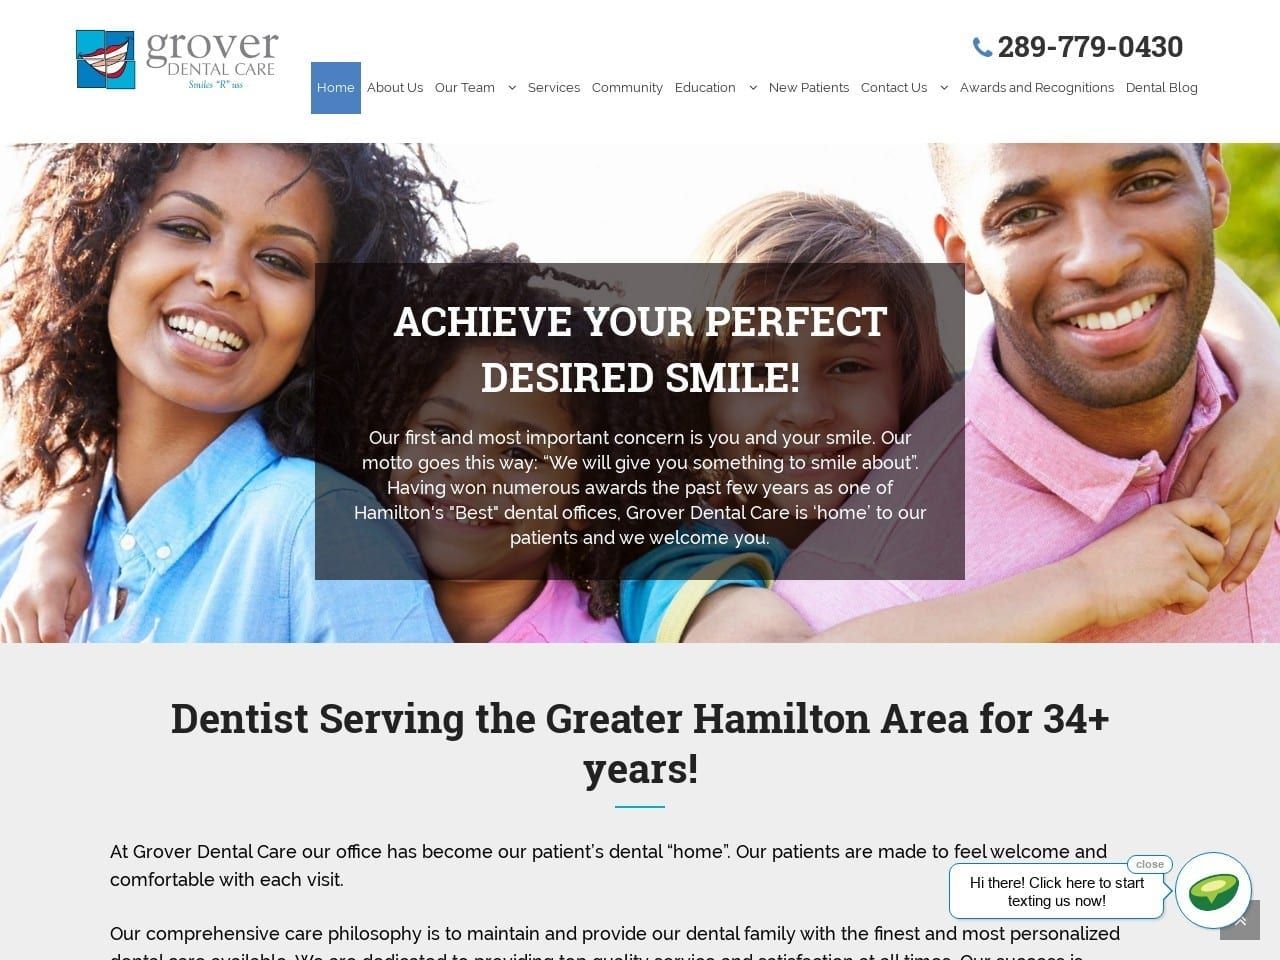 Grover Dental Care Website Screenshot from groverdentalcare.com